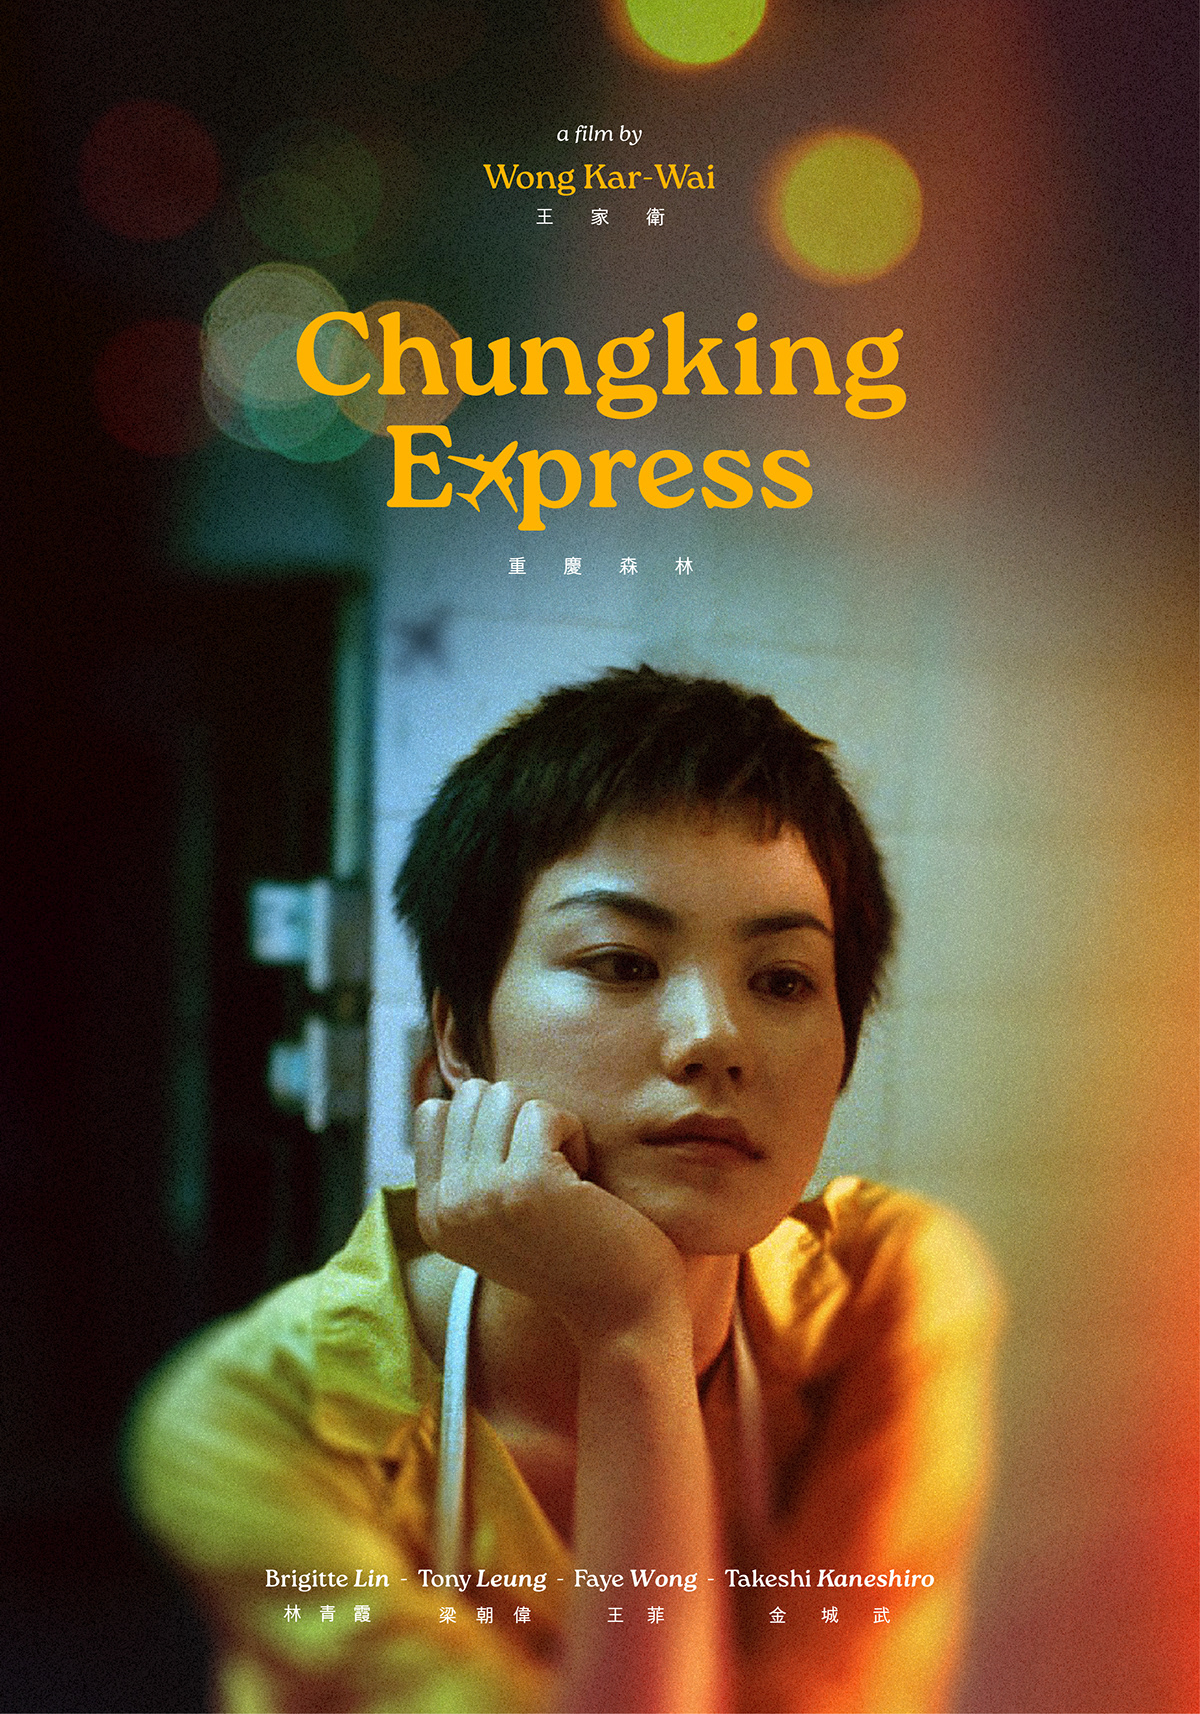 chungking express wong kar wai movie poster posters keyart Film   Movie Posters Poster Design CHUNGKING EXPRESS POSTER faye wong